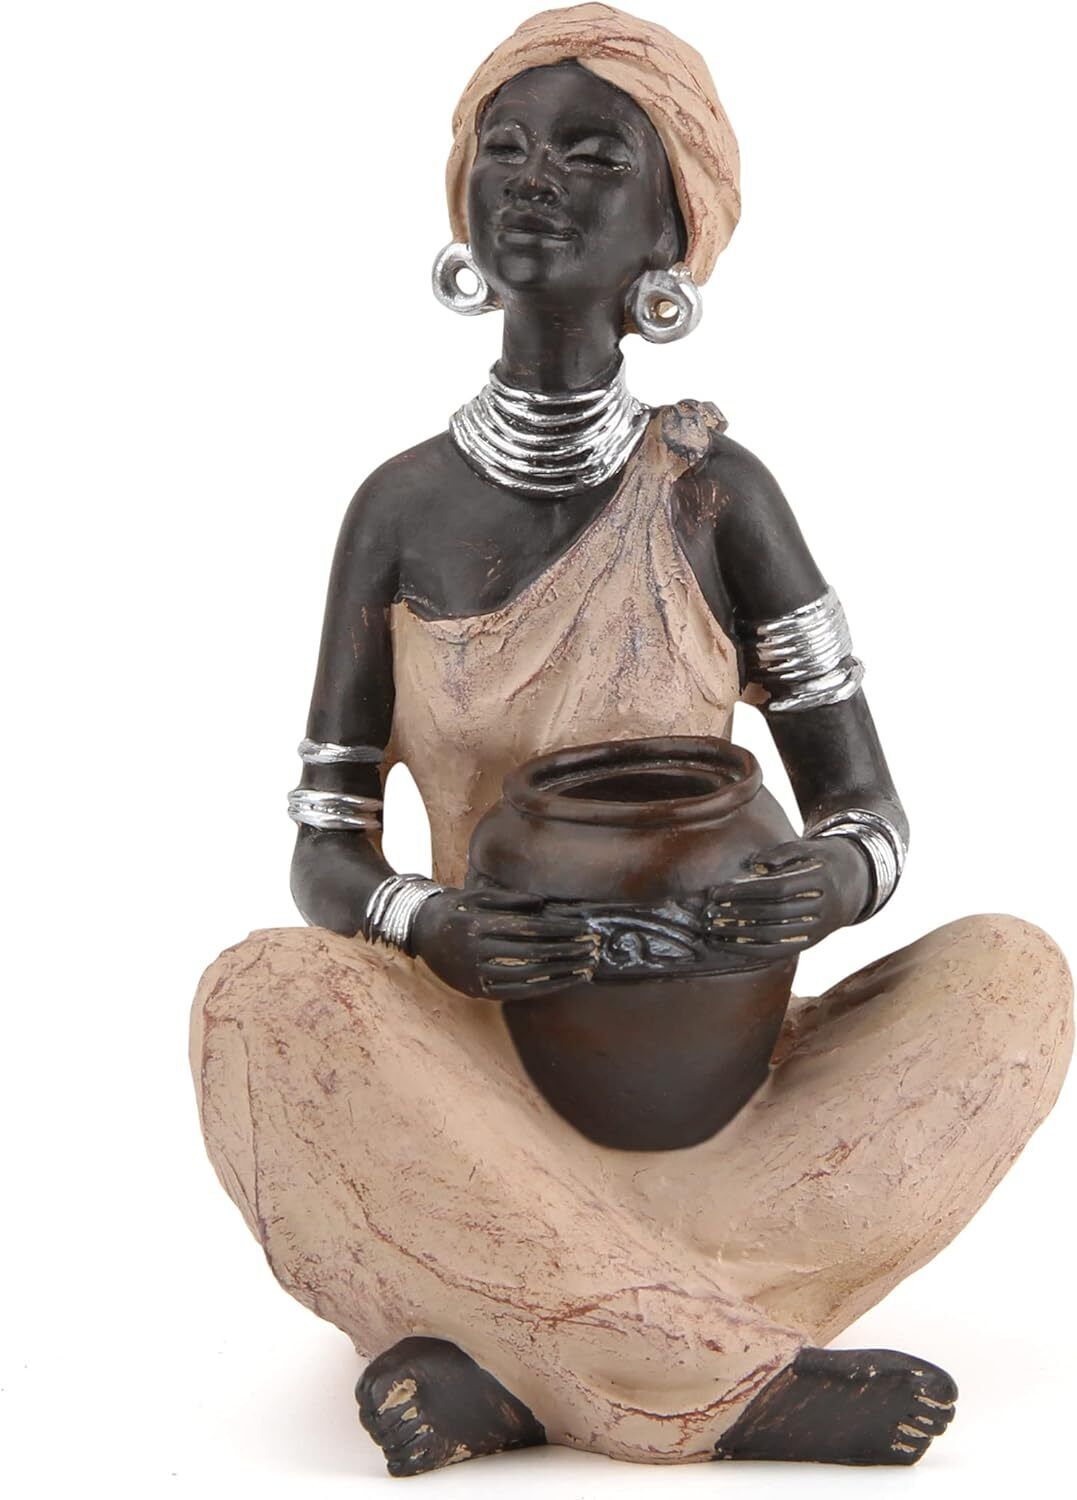 Leekung African Lady Sculpture, Resin Figurine in Woodstone B, B 